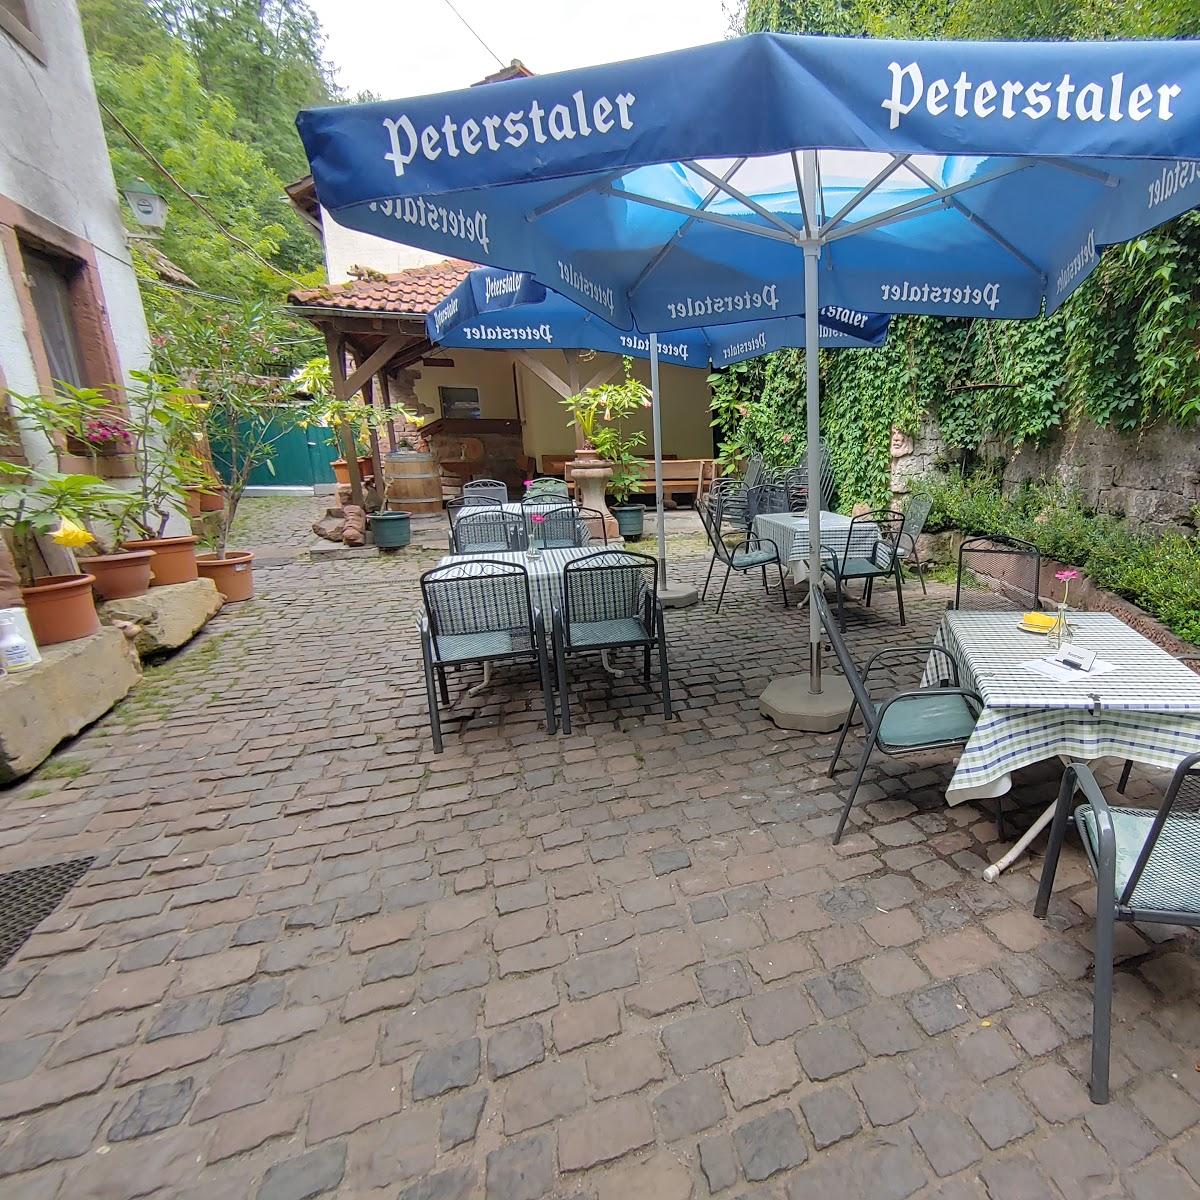 Restaurant "Siegfriedschmiede" in  Edenkoben